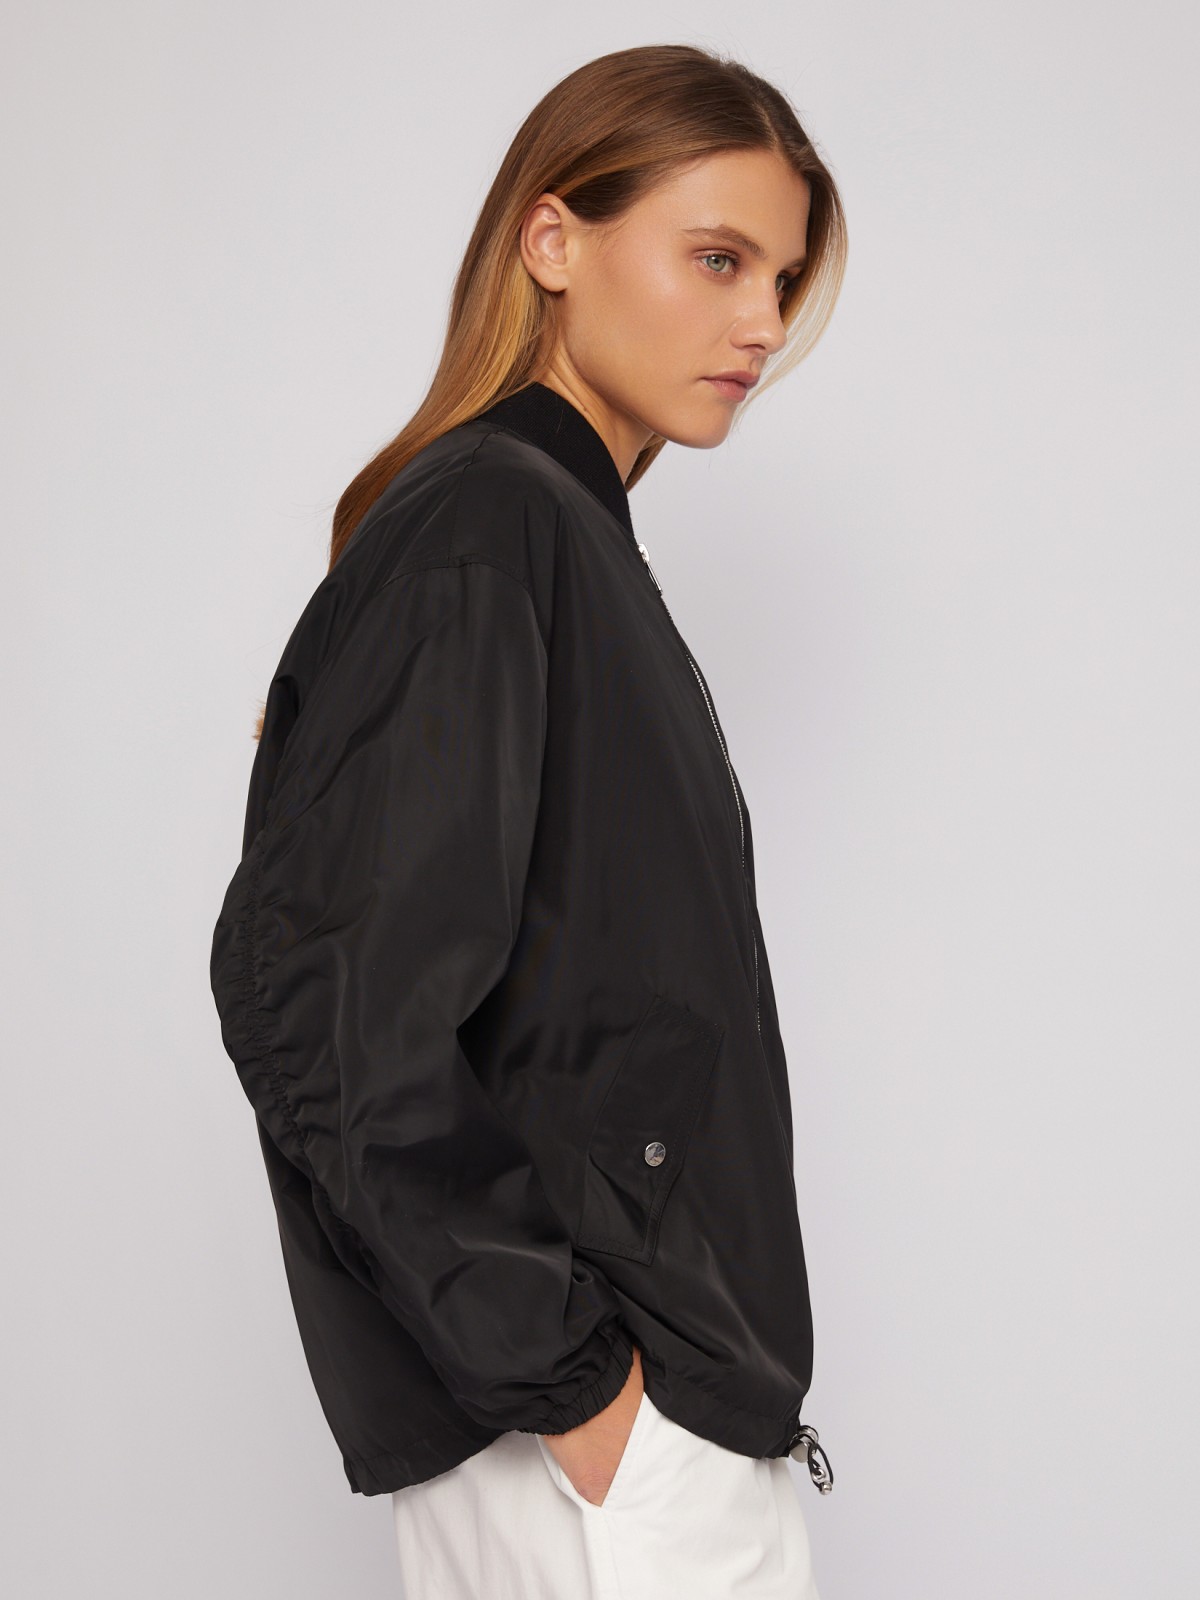 Лёгкая куртка-бомбер на молнии zolla 024215639194, цвет черный, размер XS - фото 4